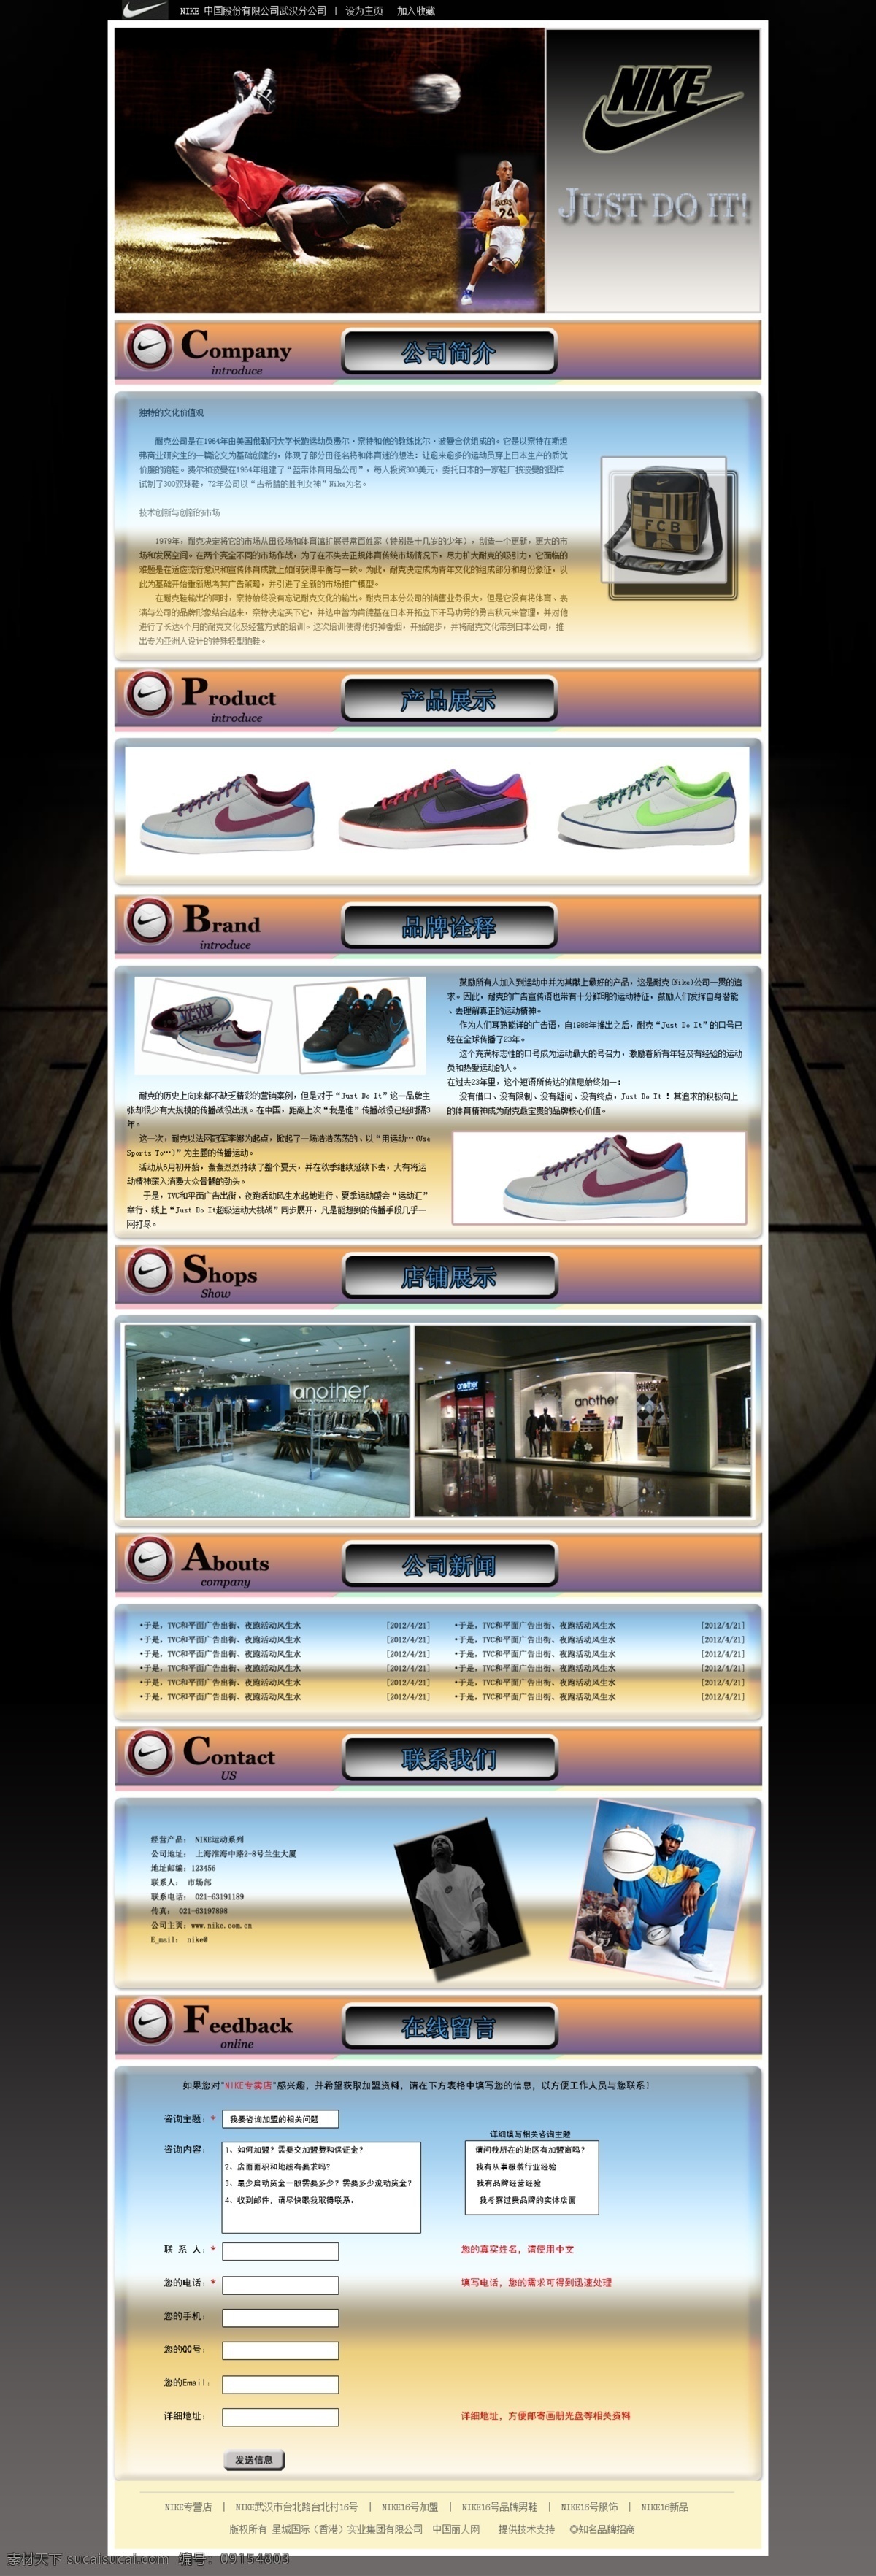 nike 购物 黑色背景 篮球 模板 耐克 网页模板 原创 运动 足球 网站模板 网页设计 专题 中文模版 源文件 网页素材